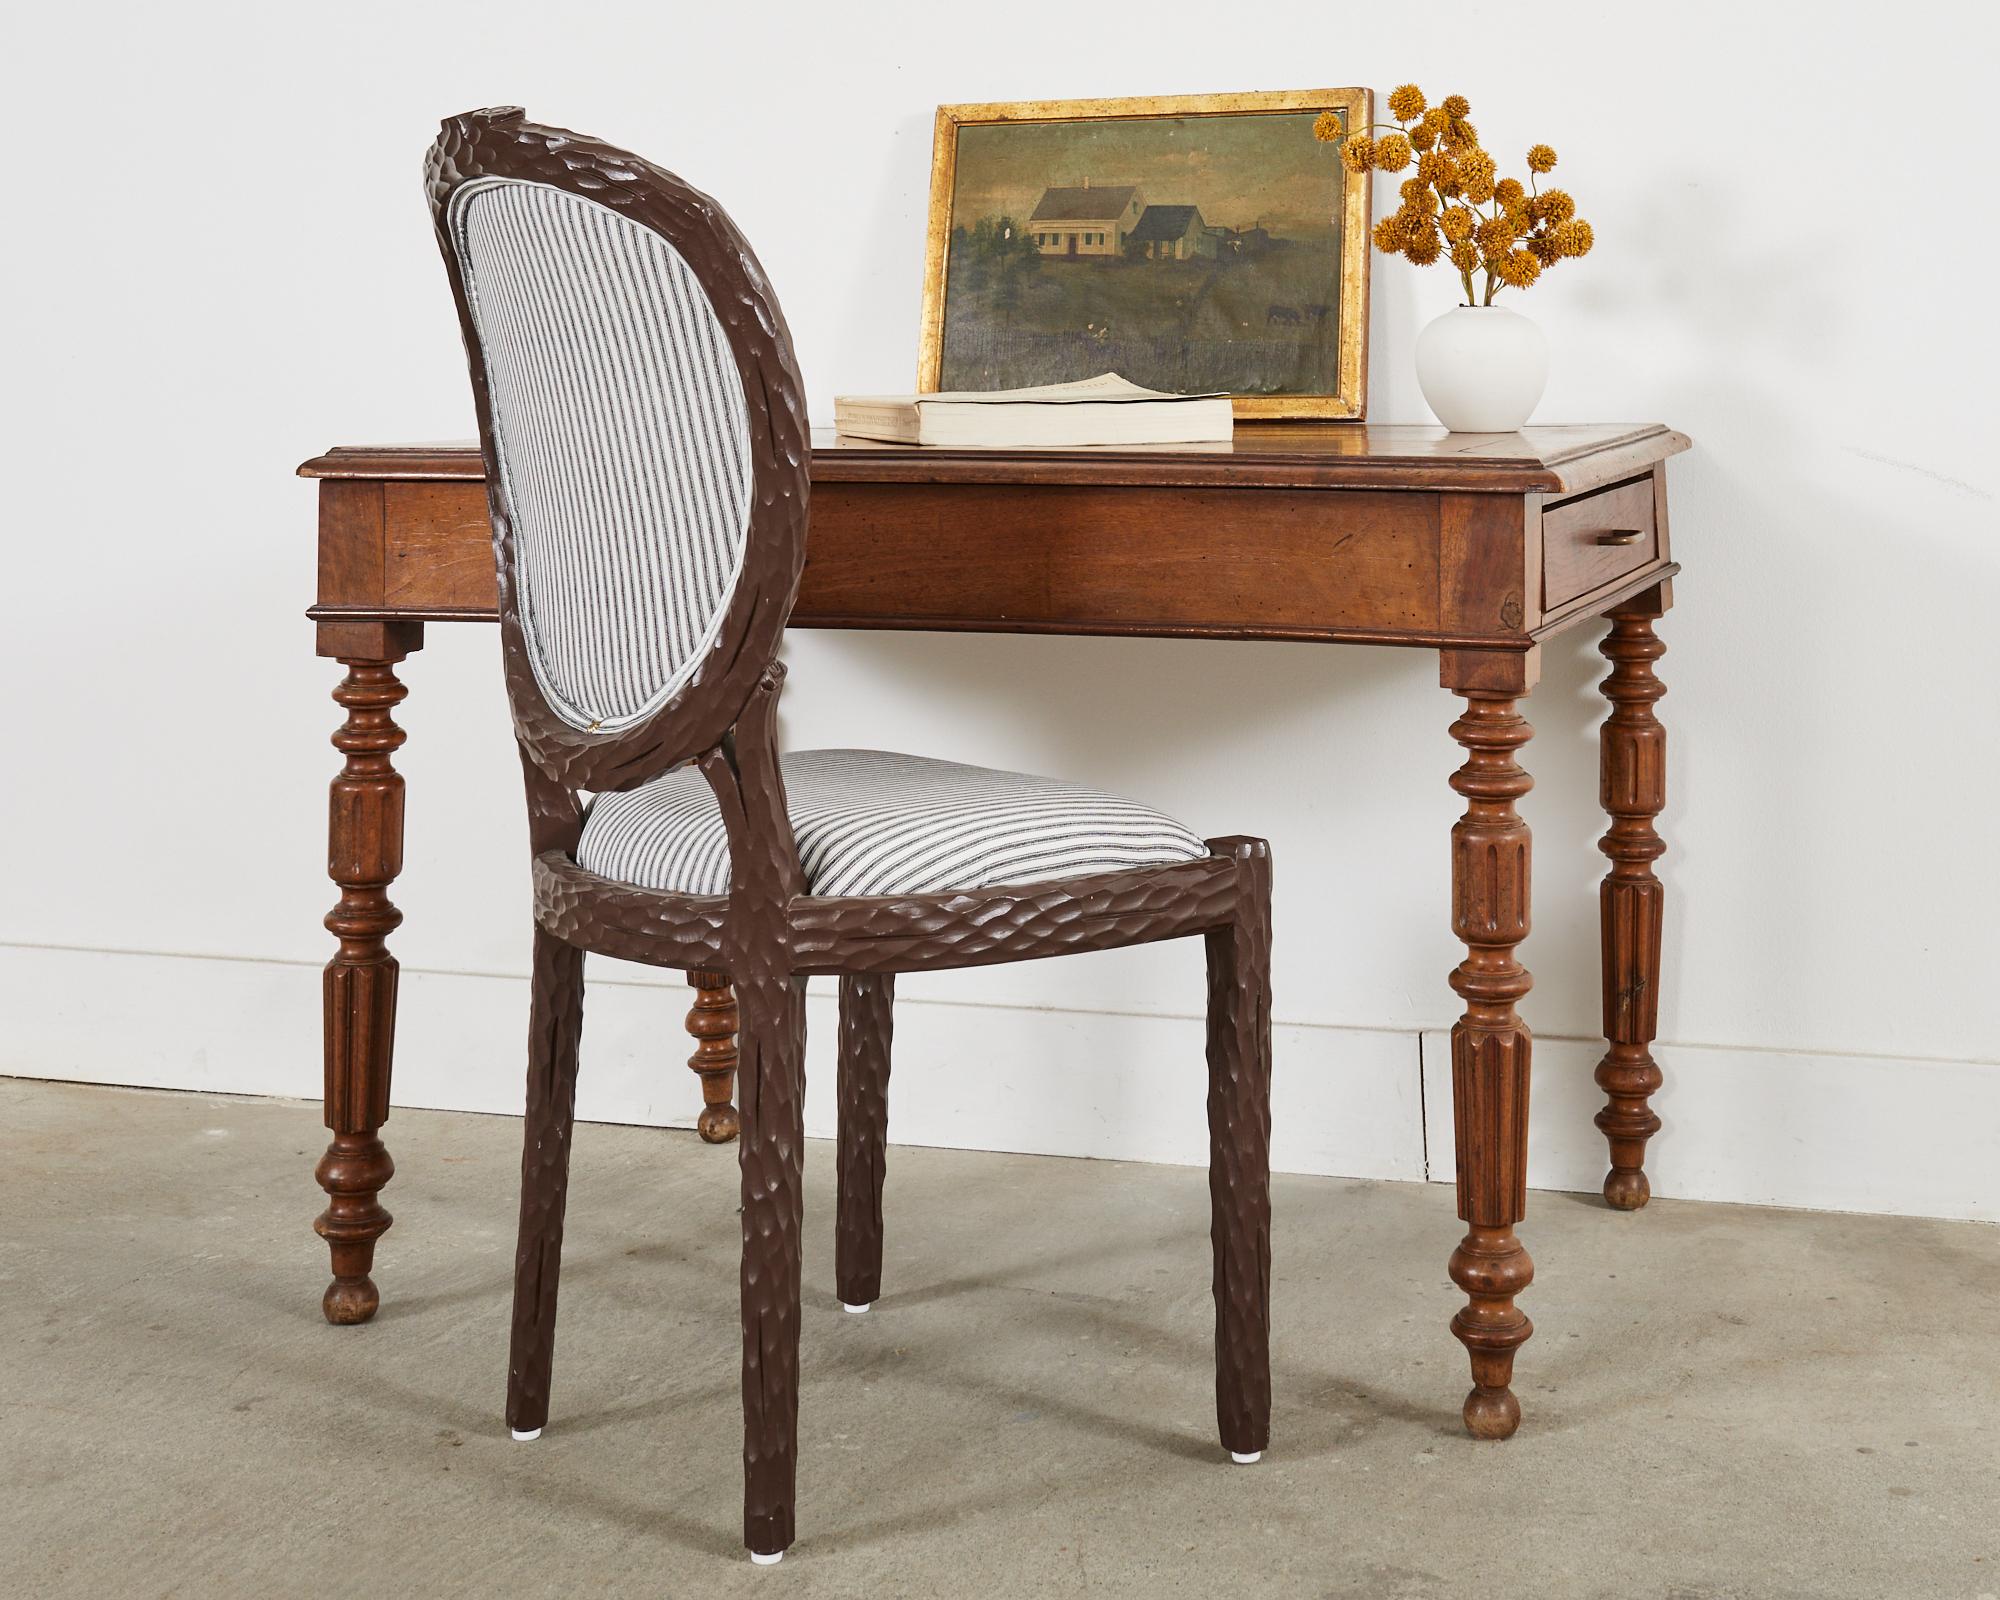 Magnifique table à écrire ou bureau William IV anglais du 19e siècle en bois fruitier et chêne mélangés. La table possède des tiroirs de rangement à chaque extrémité avec des poignées en laiton patiné. La partie supérieure est ornée d'un bord en